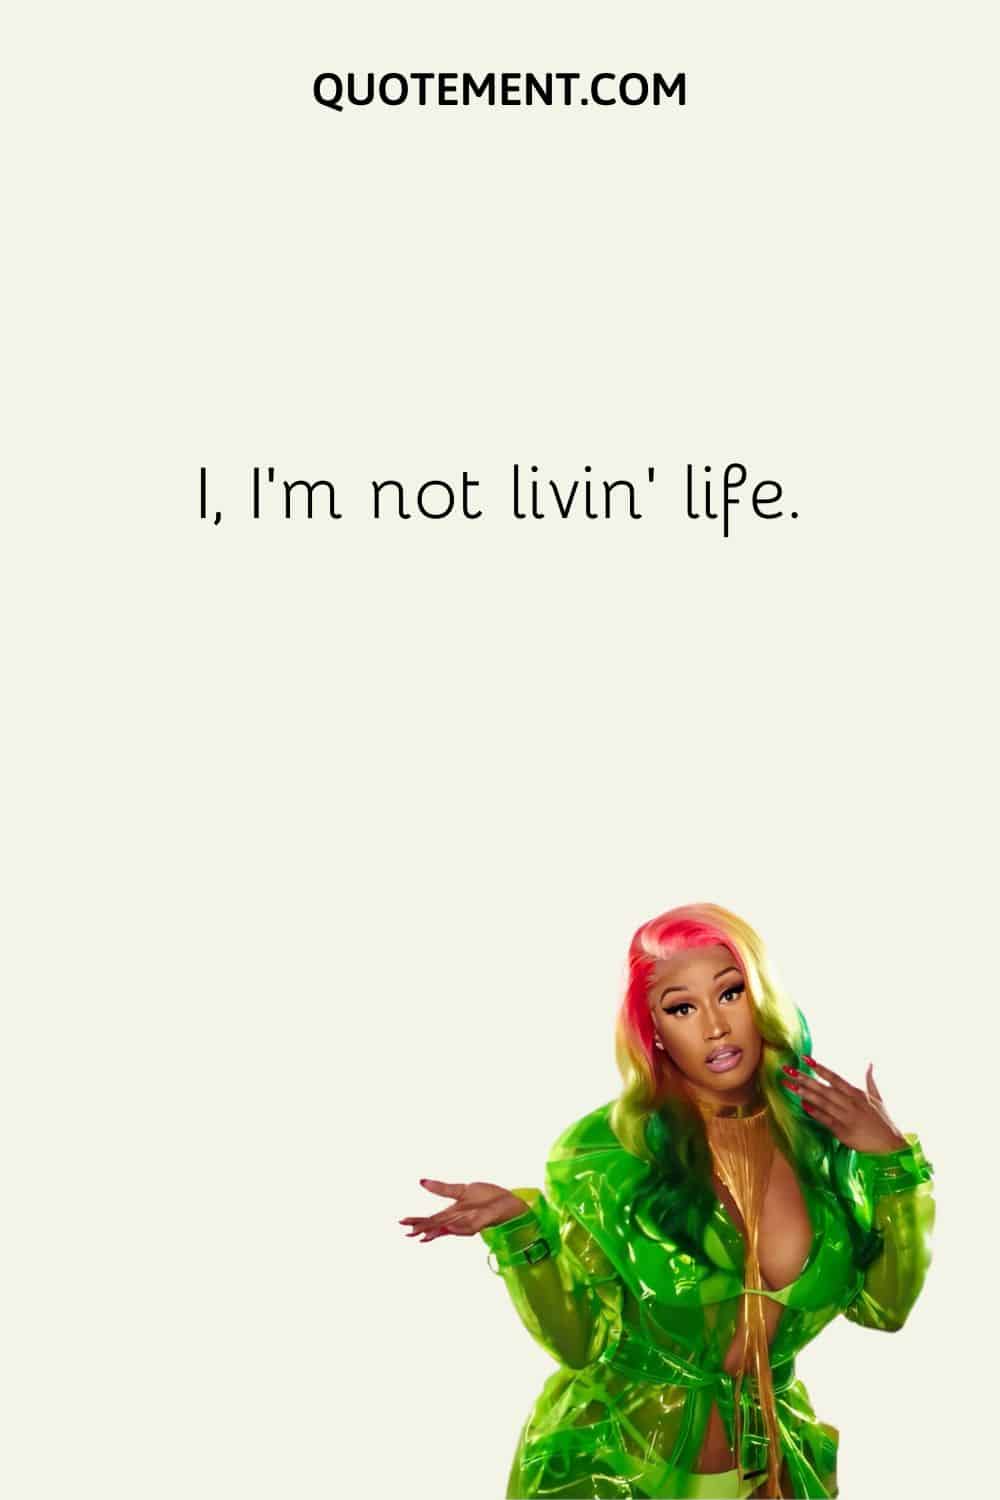 I, I'm not livin' life